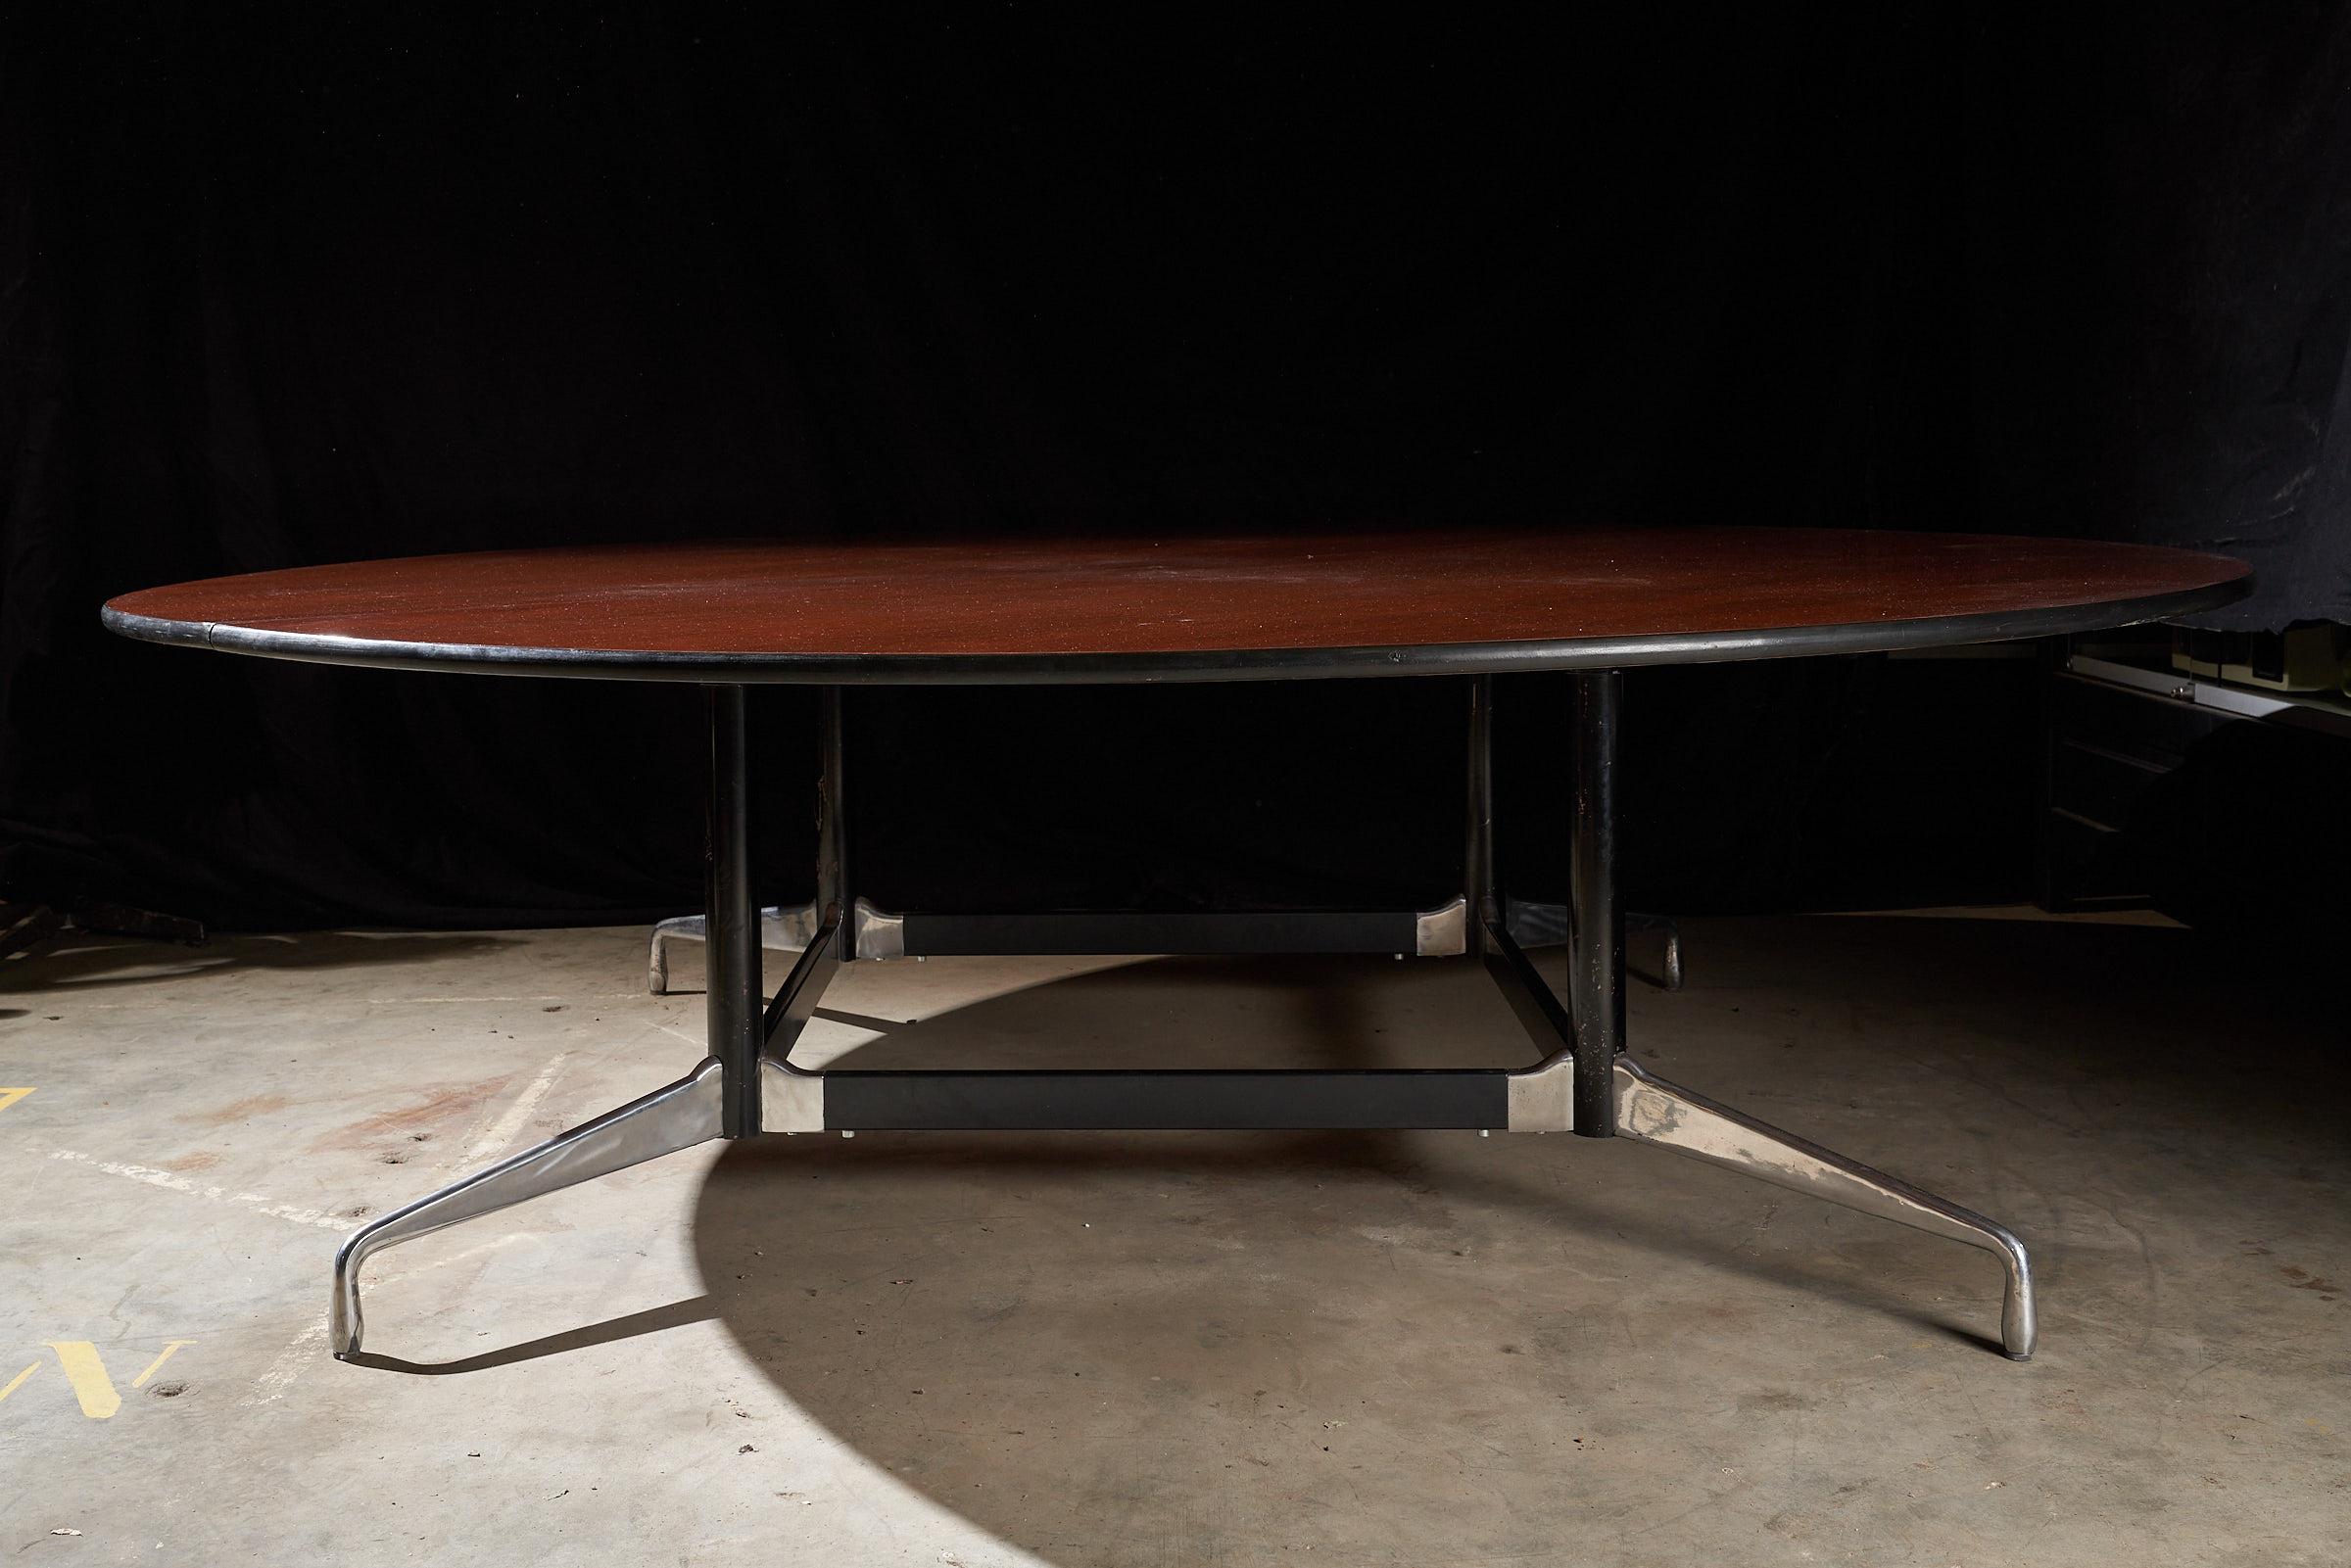 Wir stellen den großen Konferenztisch von Herman Miller Eames vor, der mit seiner beeindruckenden Größe und seinem zeitlosen Charme die Aufmerksamkeit auf sich zieht. Die hölzerne Tischplatte, die auf den beigefügten Bildern zu sehen ist, ist in